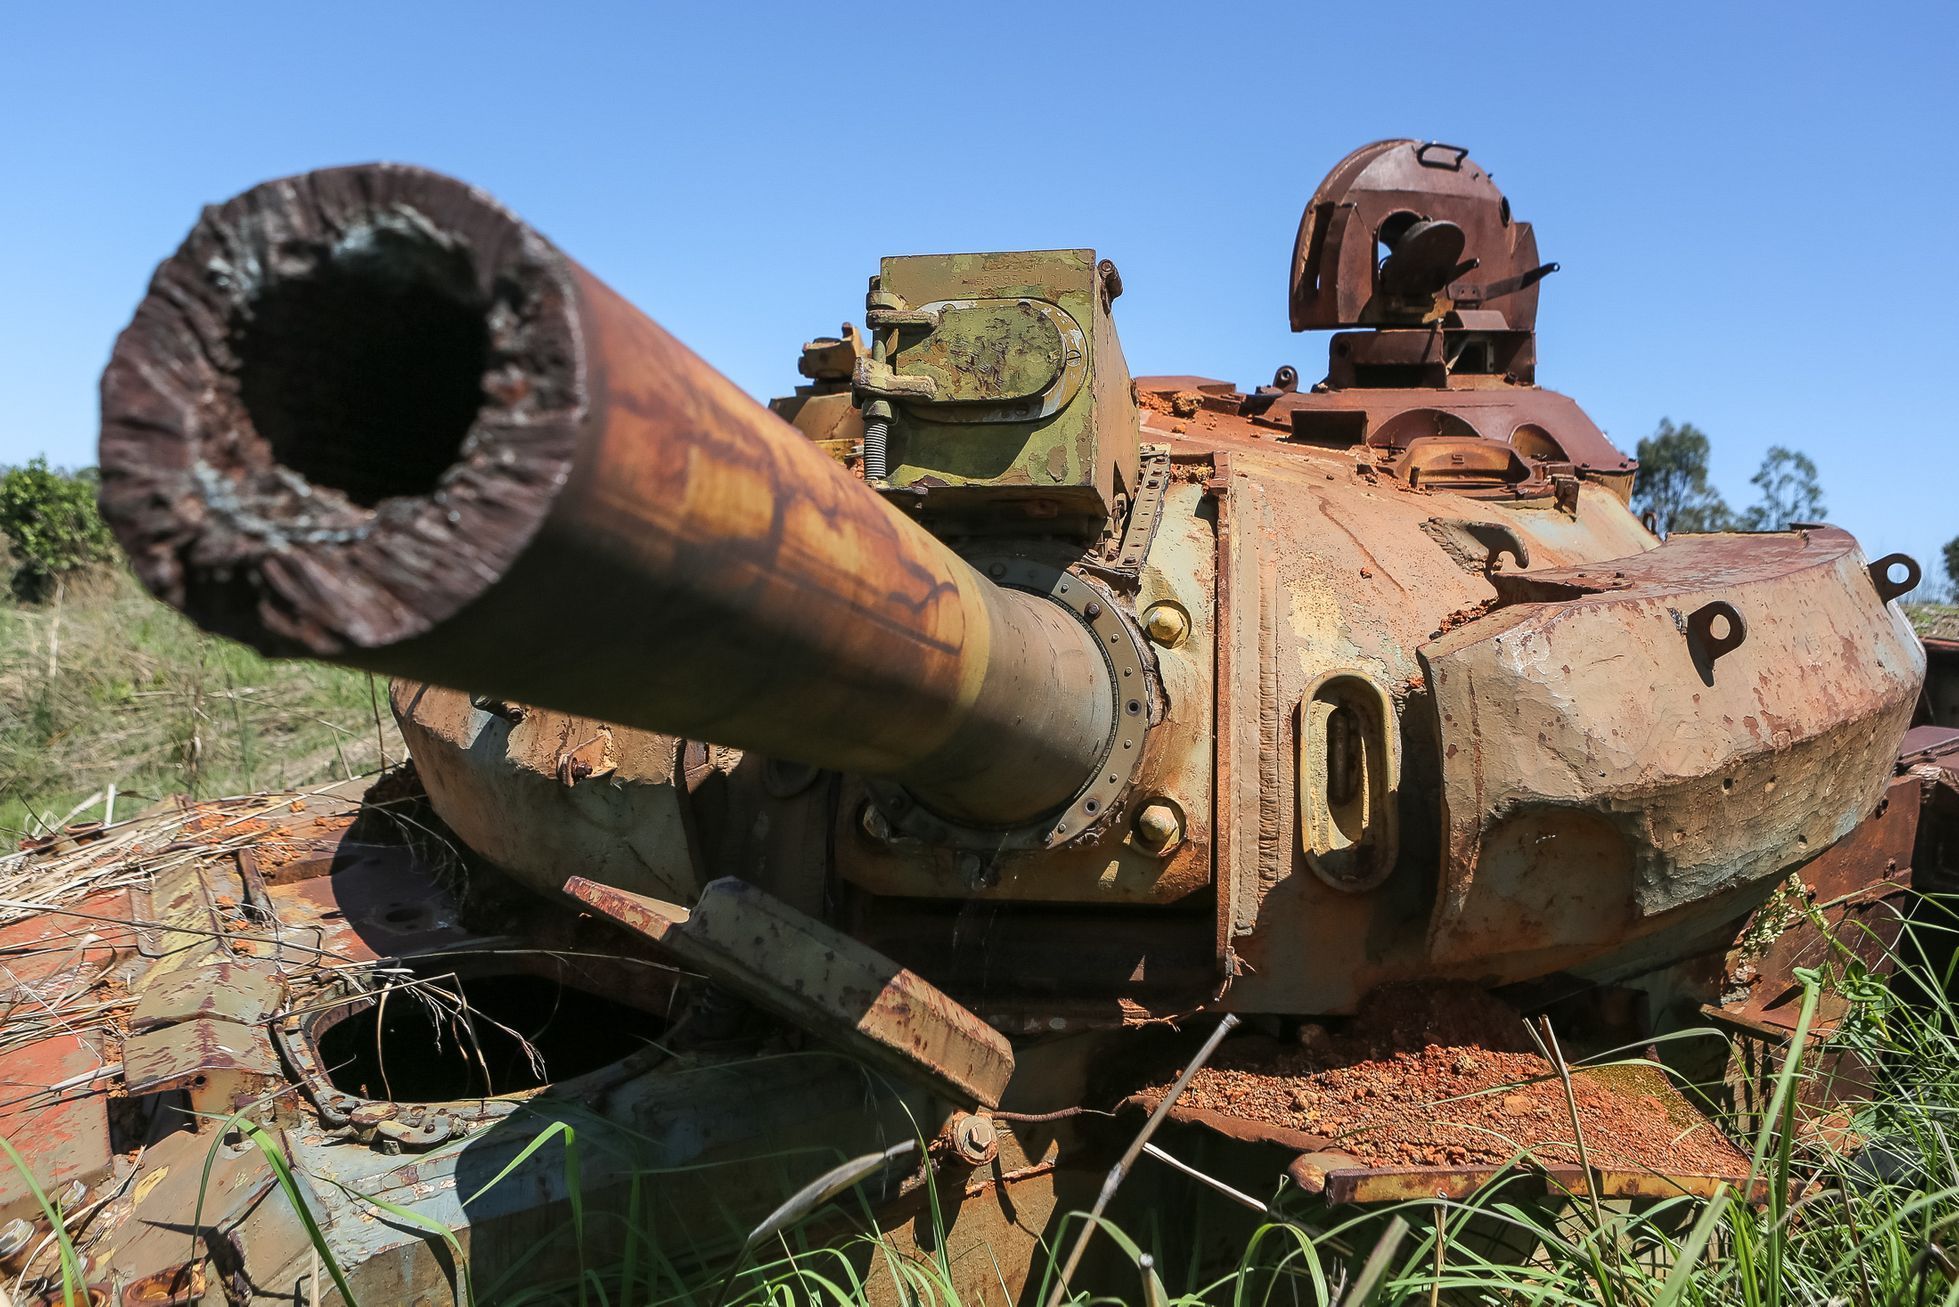 Angola - pozůstatky občanské války - tanky, rozstřílené domy, trosky